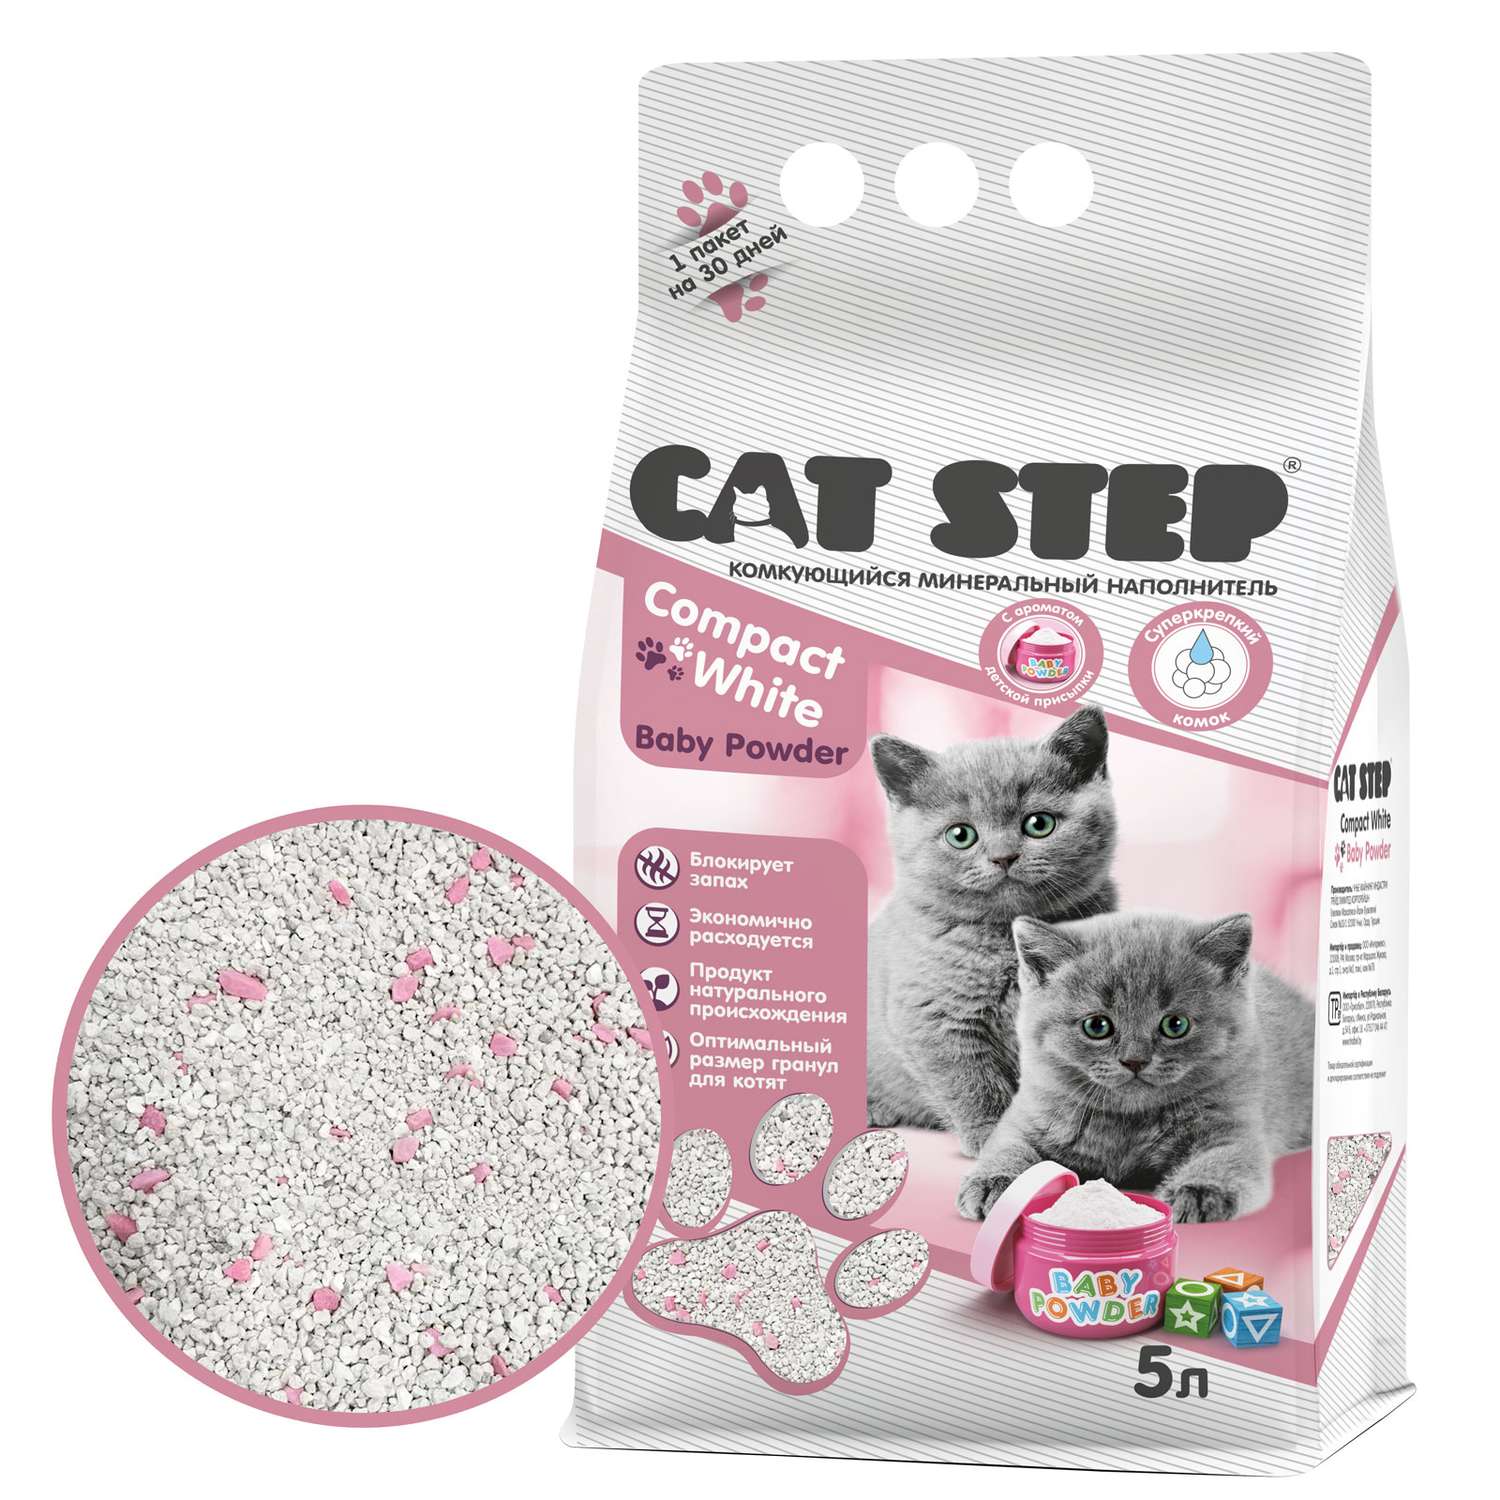 Наполнитель для котят Cat Step Compact White Baby Powder комкующийся минеральный 5л - фото 4